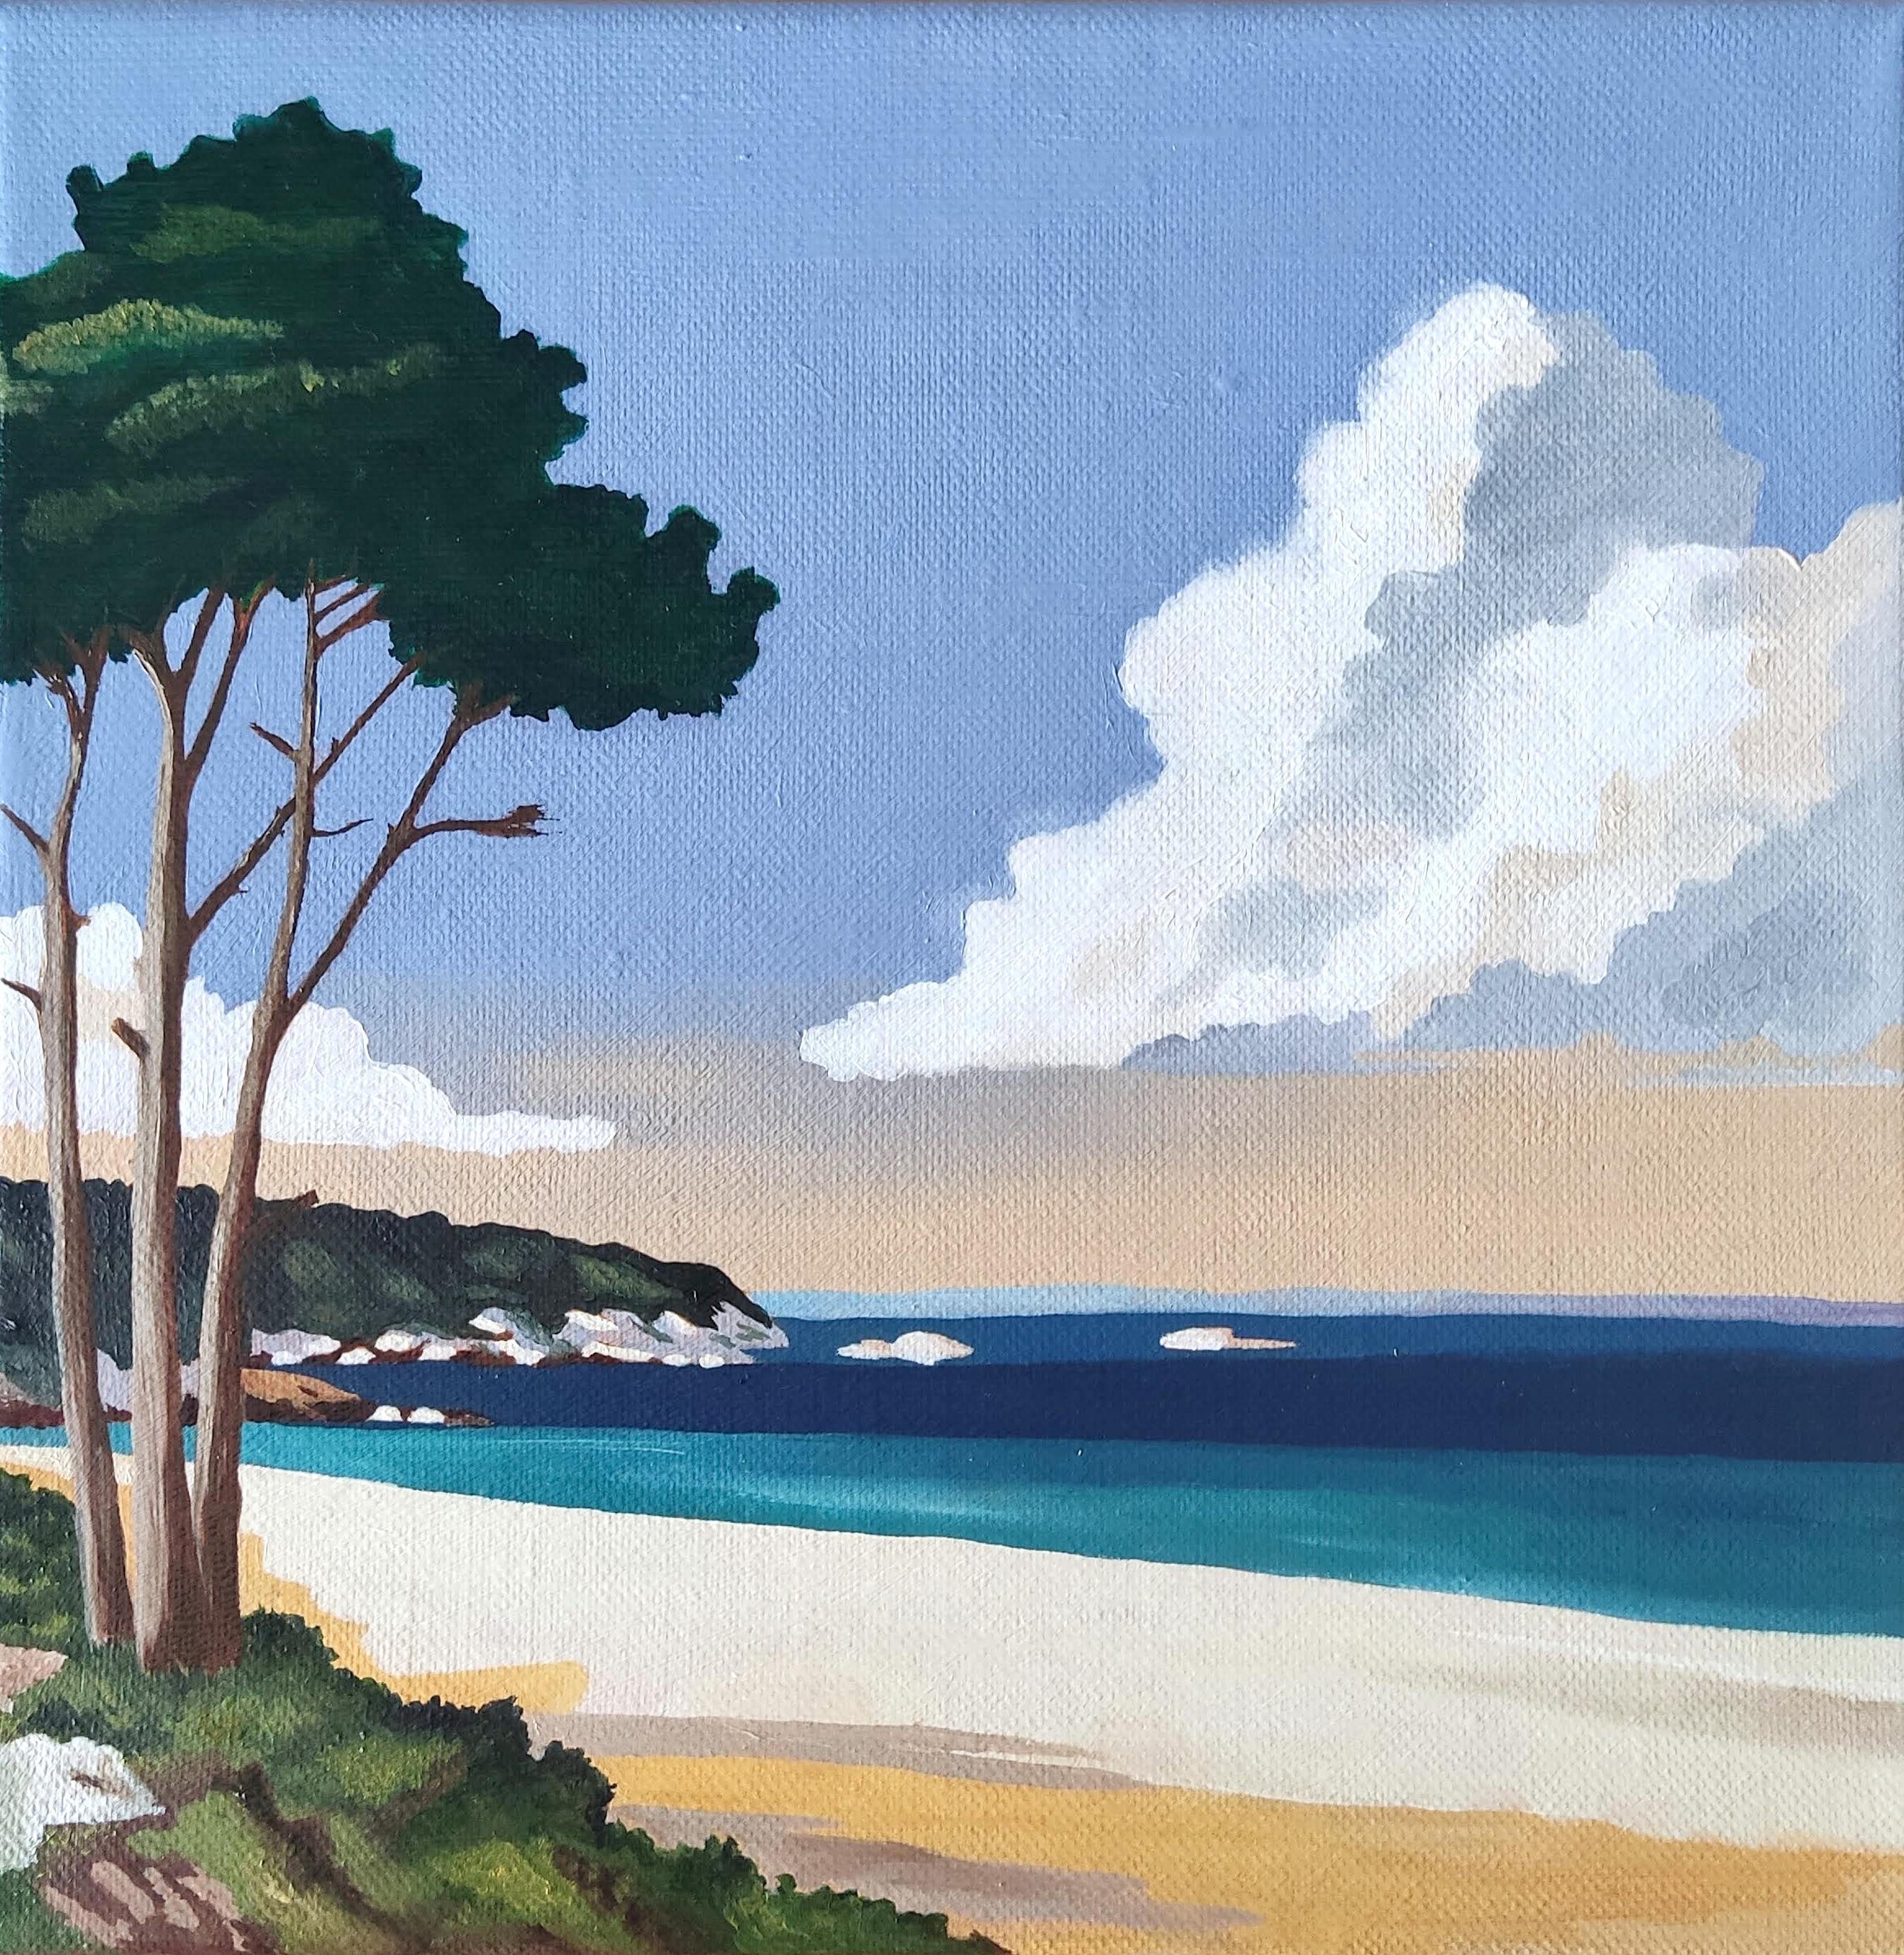 Landscape Painting Gabriel Riesnert - Bord de mer, peinture à l'huile sur toile, bord de mer, paysage contemporain, plage